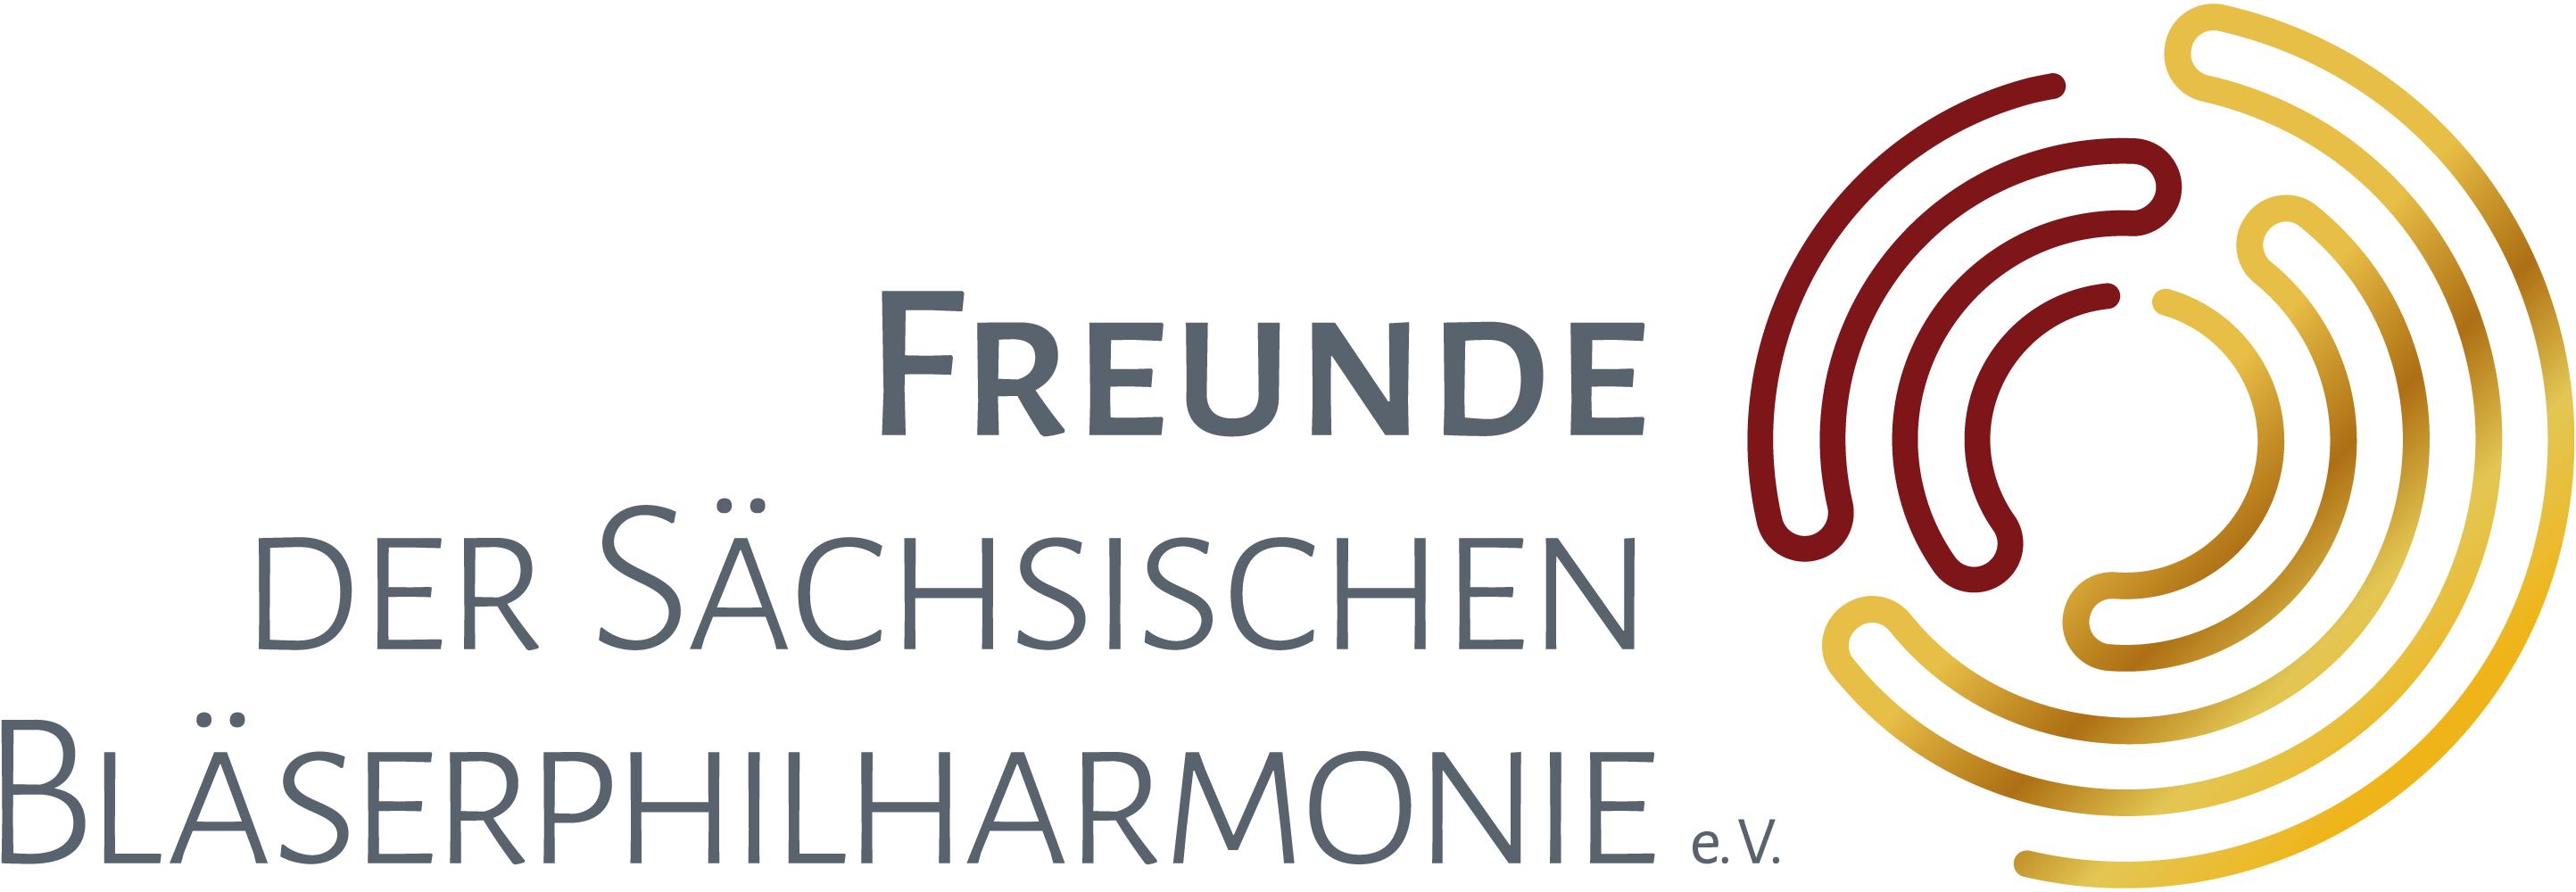 logo_freunde_der_sbp_rgb_kopie | Sächsische Bläserphilharmonie - Förderverein